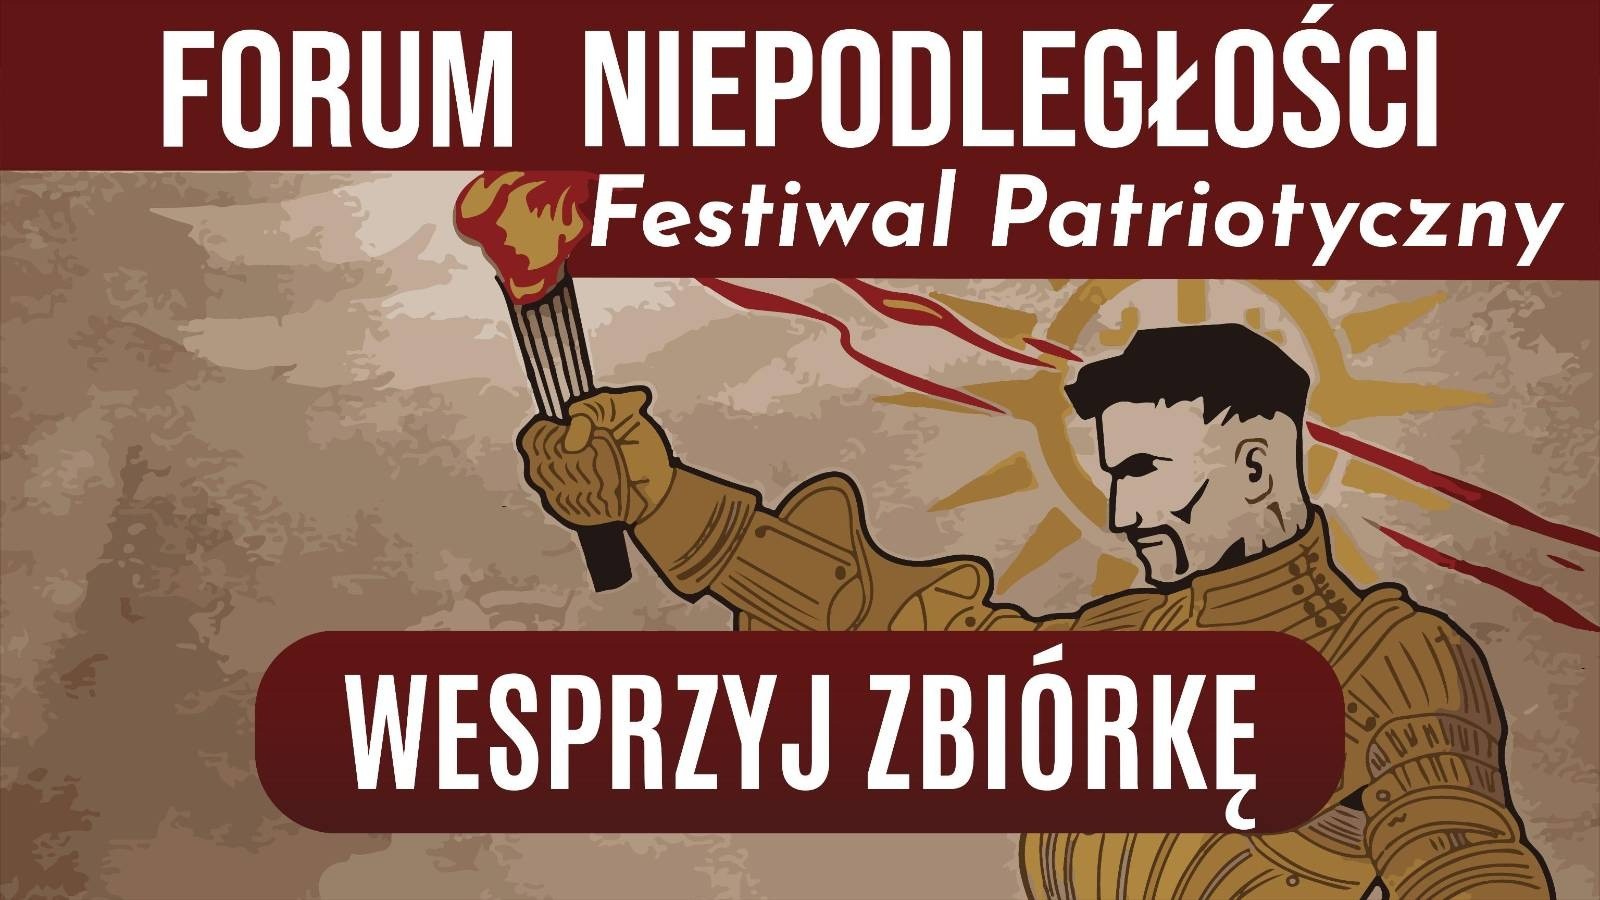 Zbiórka na organizację Forum Niepodległości. Wesprzyj wyjątkowy festiwal patriotyczny!